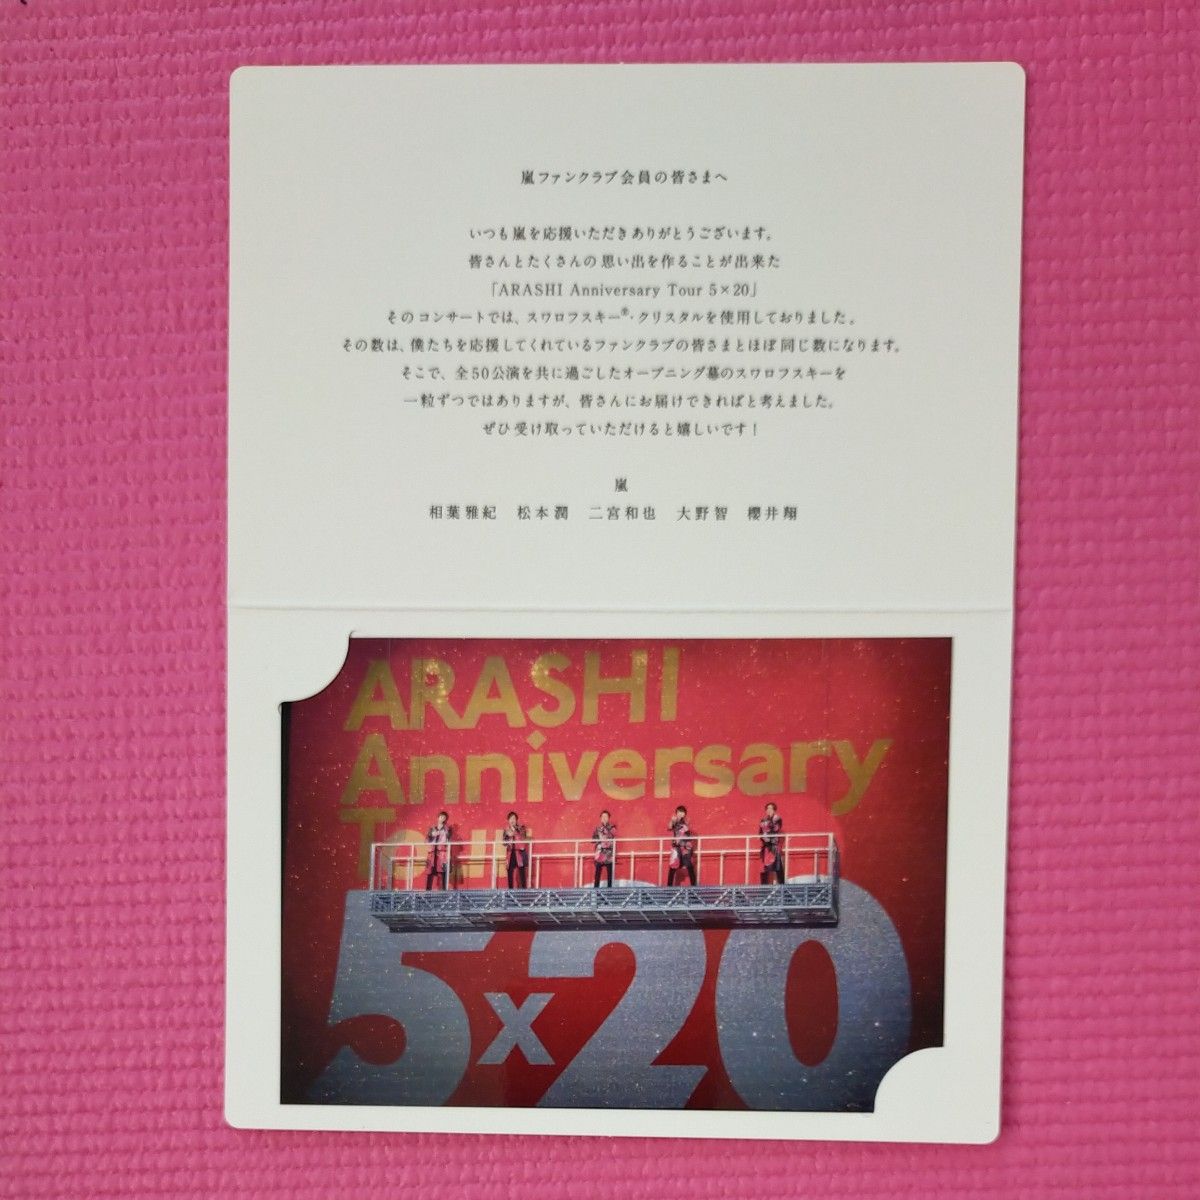 嵐 ファンクラブ限定 「 ARASHI Anniversary Tour 5×20